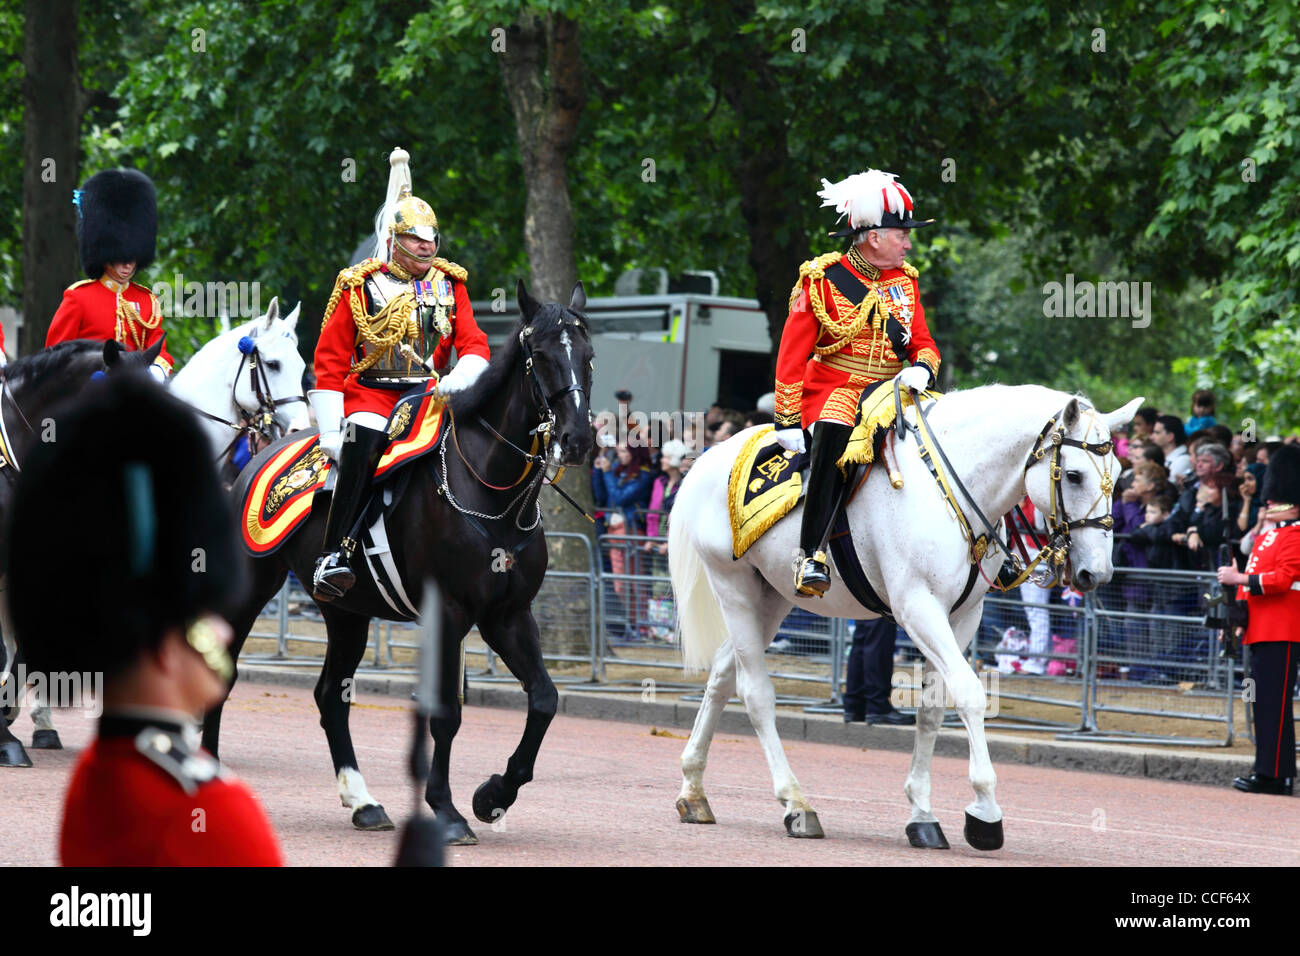 Cavalerie de la garde de la vie à la personne de passer le long de Pall Mall durant la parade la couleur, Londres, Angleterre 2011 Banque D'Images